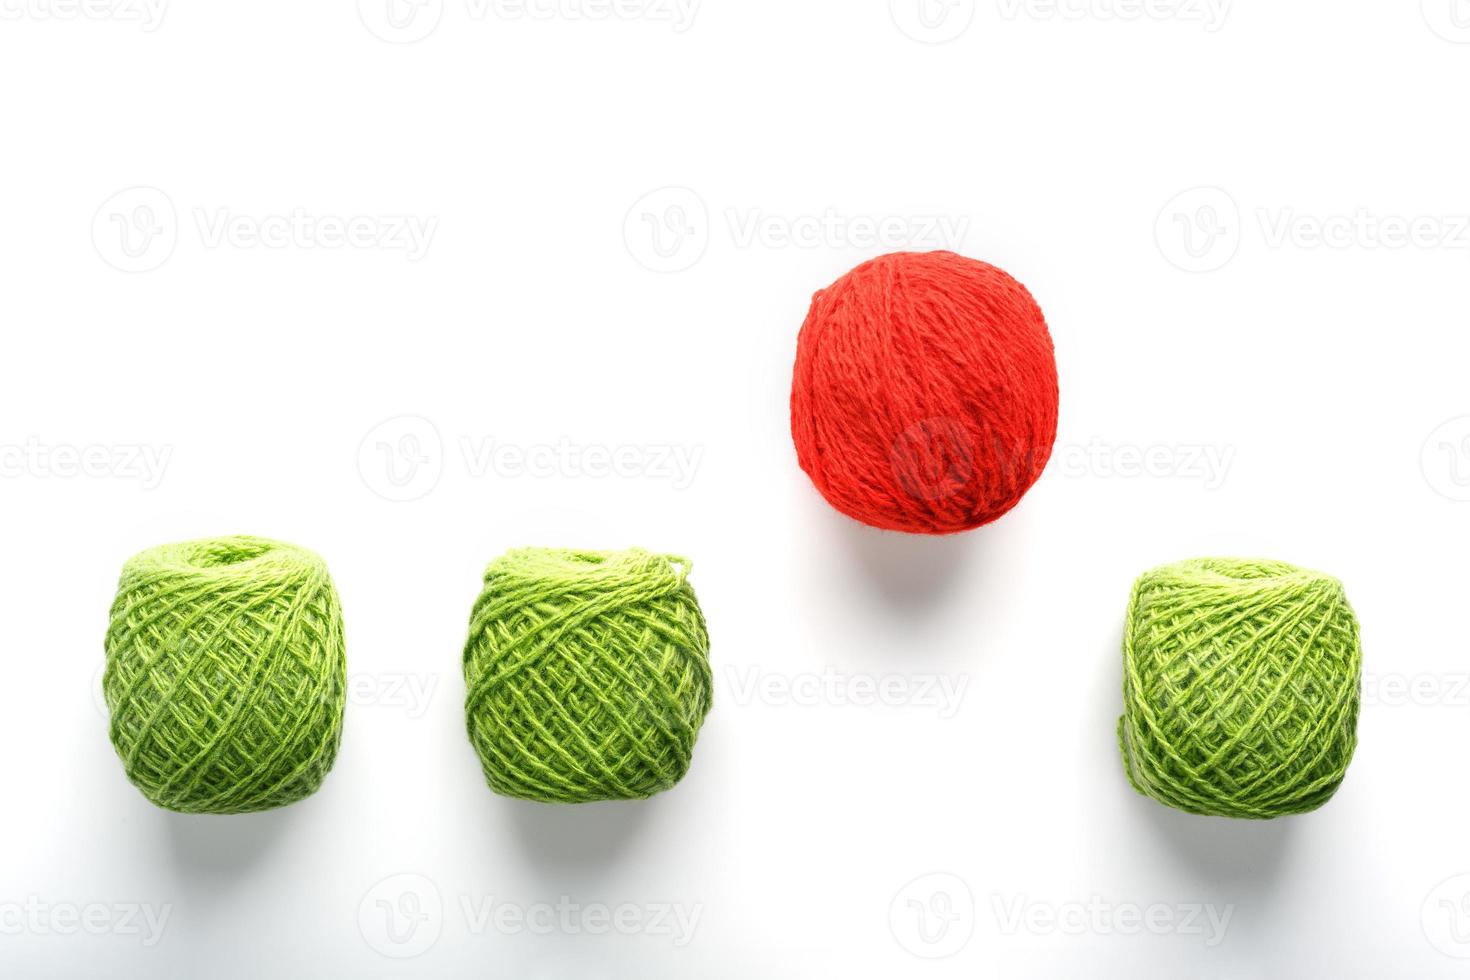 uma bola vermelha única salta de uma fileira de bolas de lã idênticas. conceito abstrato de liderança, foto